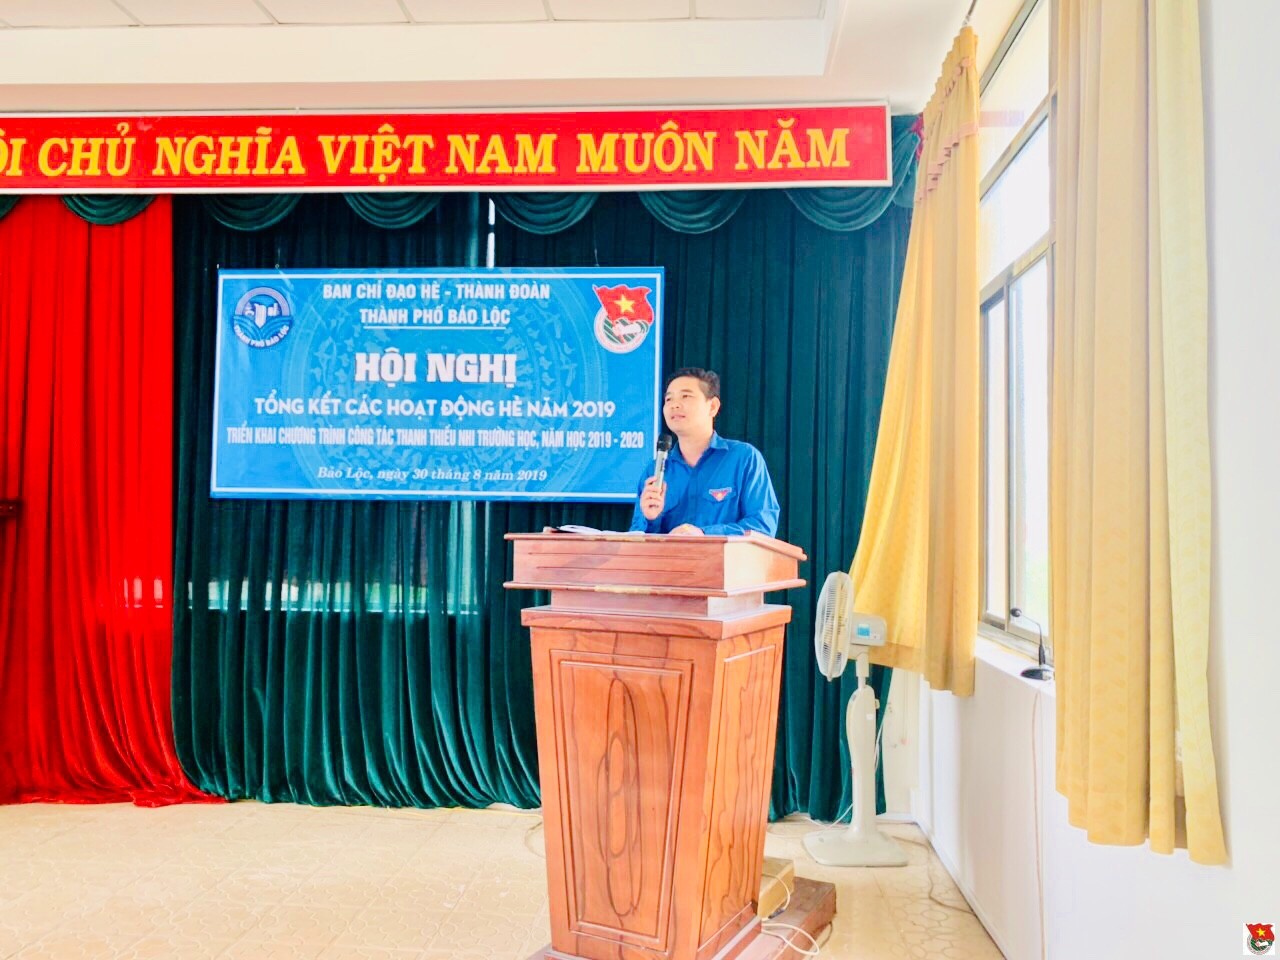 Ban chỉ đạo hè Thành phố Bảo Lộc tổ chức Hội nghị tổng kết hoạt động hè 2019